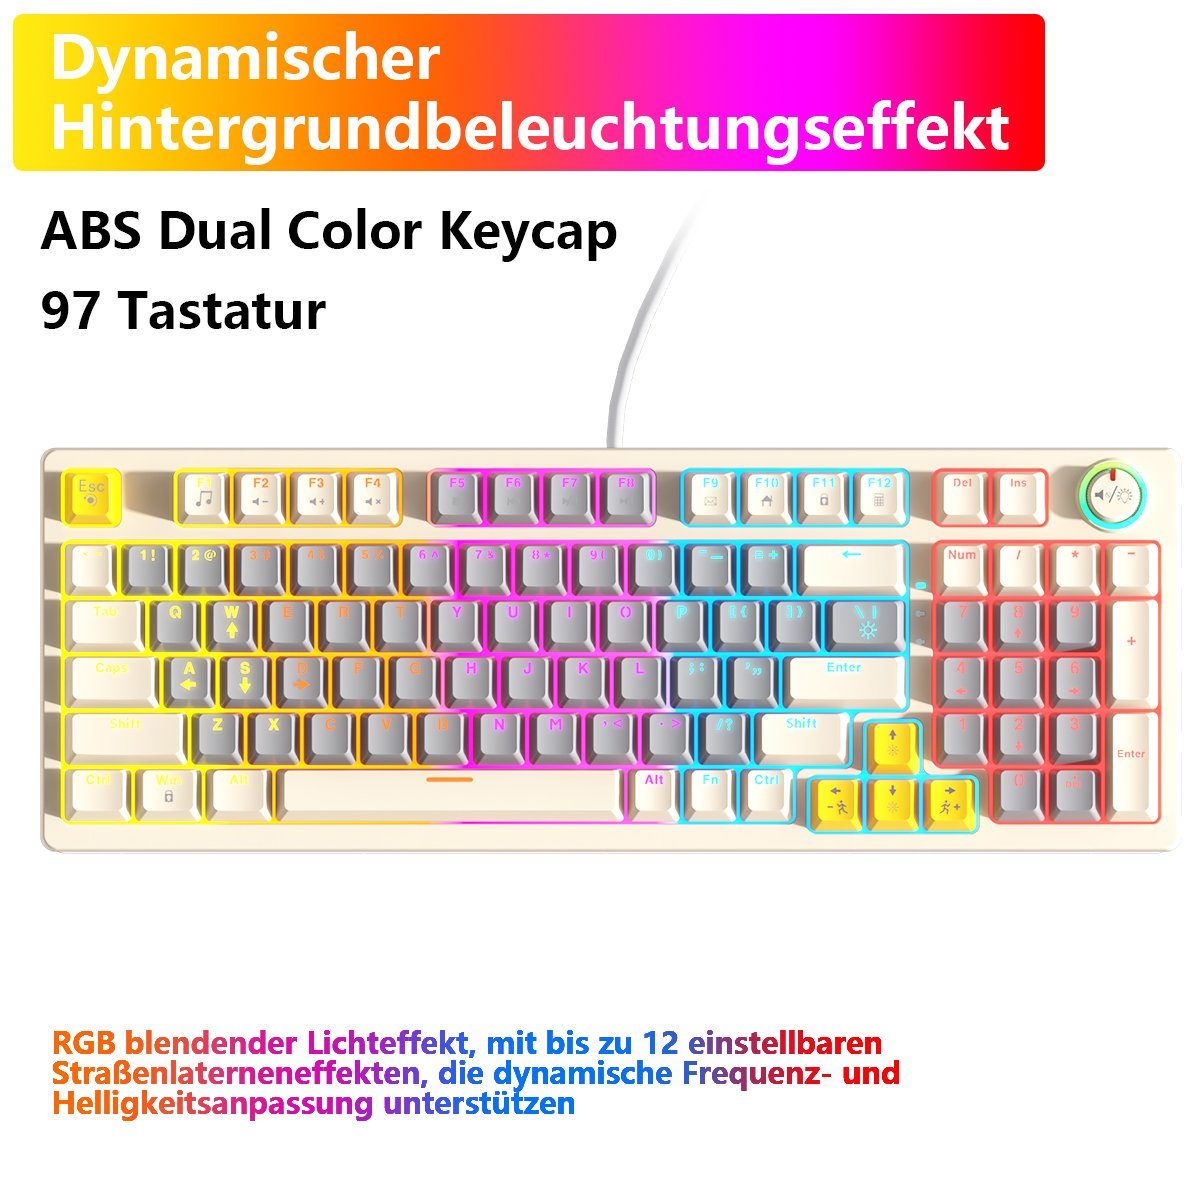 BUMHUM Nicht deutsche Tastatur Echte mechanische Tastatur,RGB-Beleuchtung Gaming-Tastatur (Zweifarbige Doppel- und Dreifarbige RGB-Gaming-Tastatur mit Kabe) Weiß | Mechanische Tastaturen